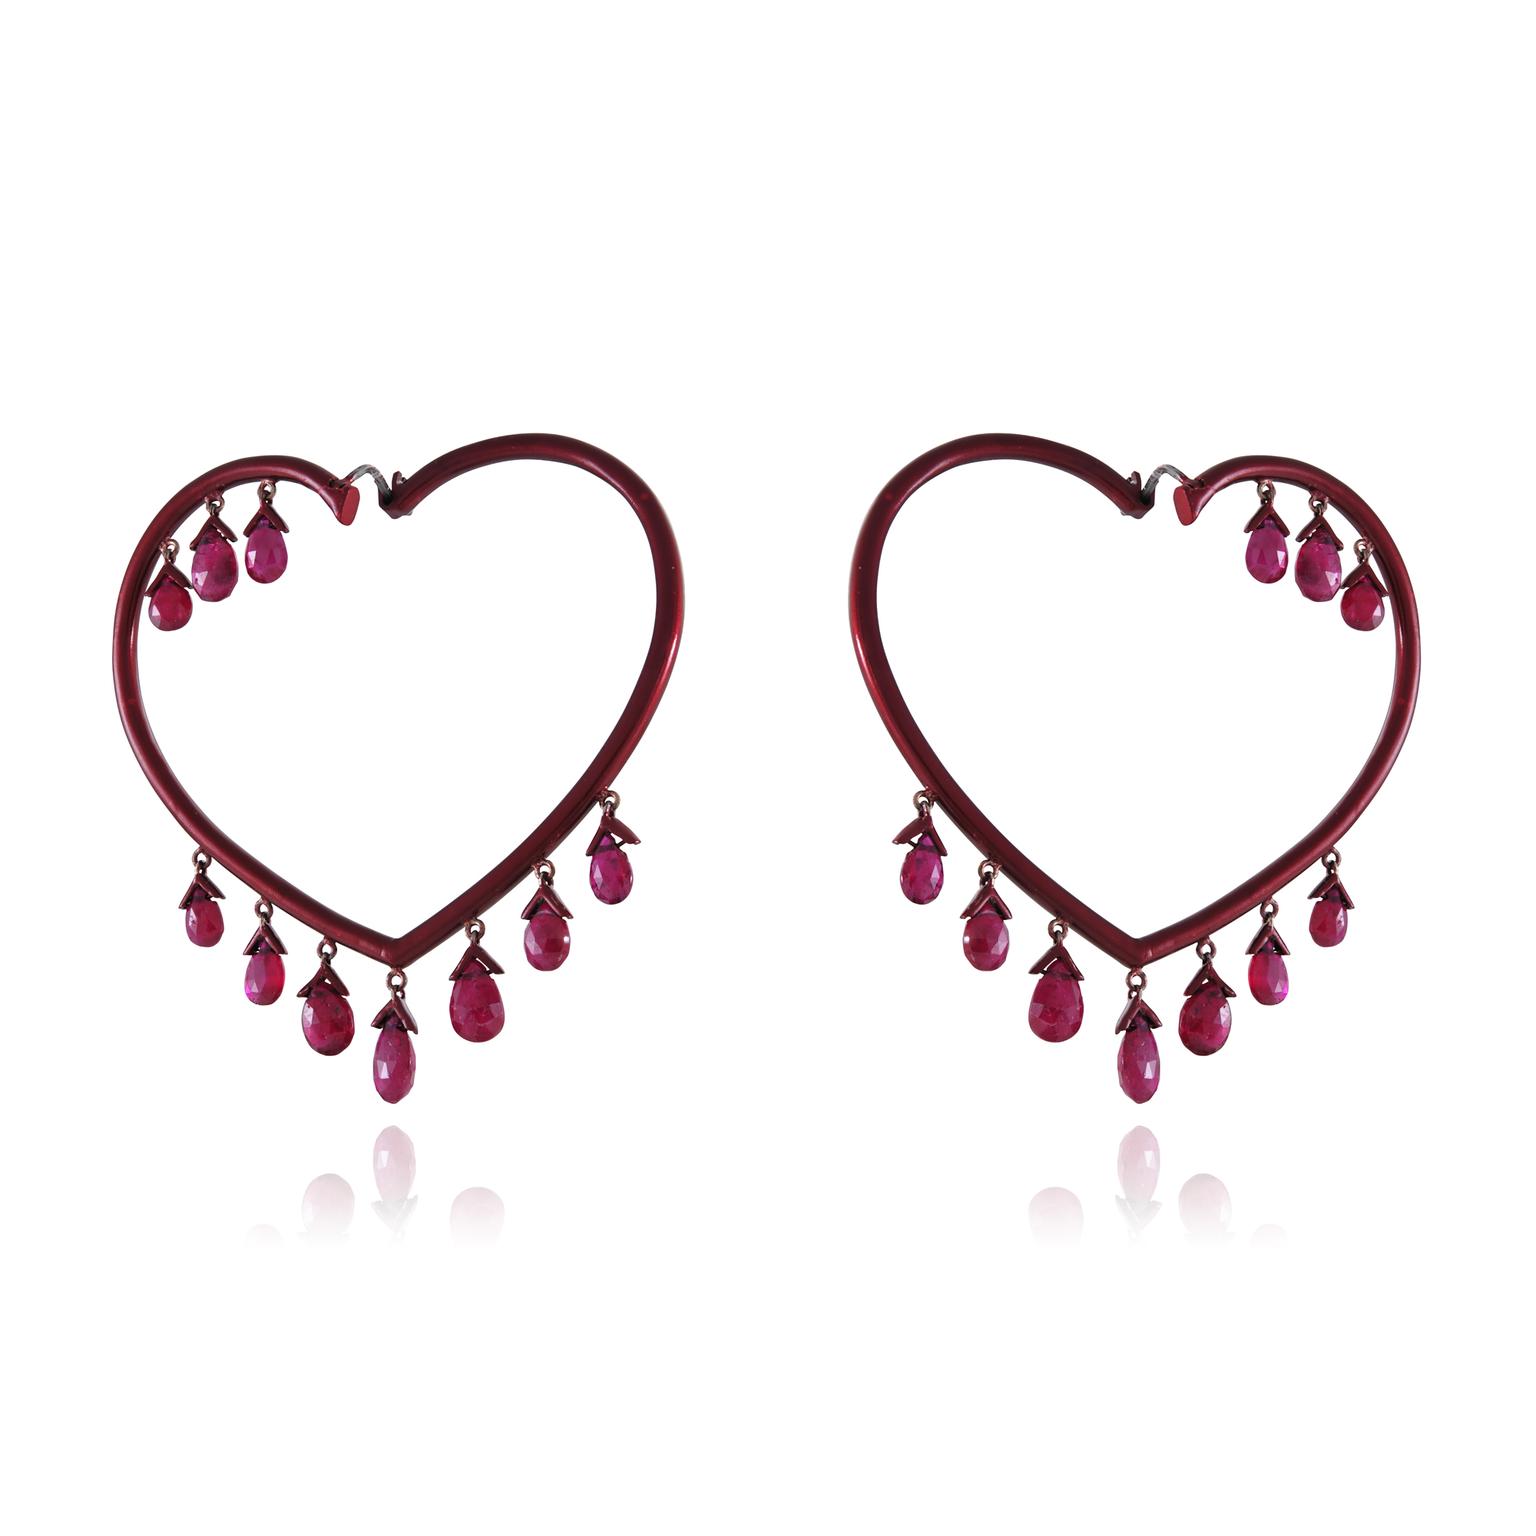 Lydia Courteille Scarlett Empress ruby earrings